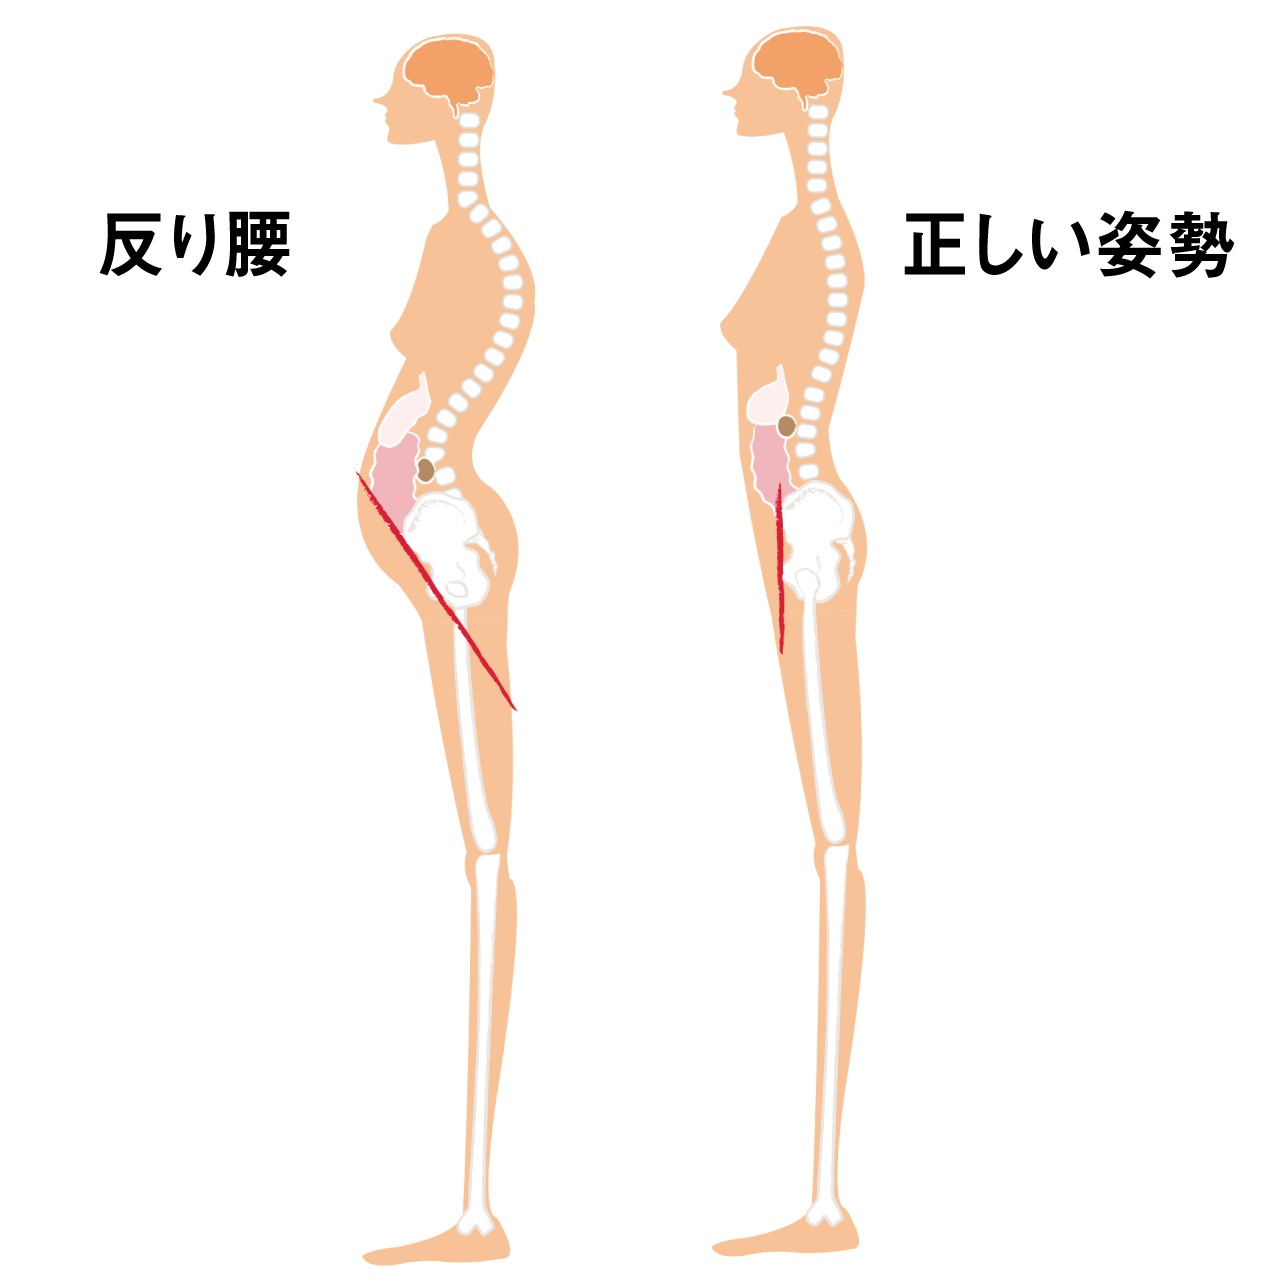 反り腰の姿勢は、骨盤が前傾した状態。これをずっと続けていると、骨盤が変形して固定されます。この体の歪みにより、脇腹とお尻の筋肉が緊張し、慢性腰痛の大きな原因に